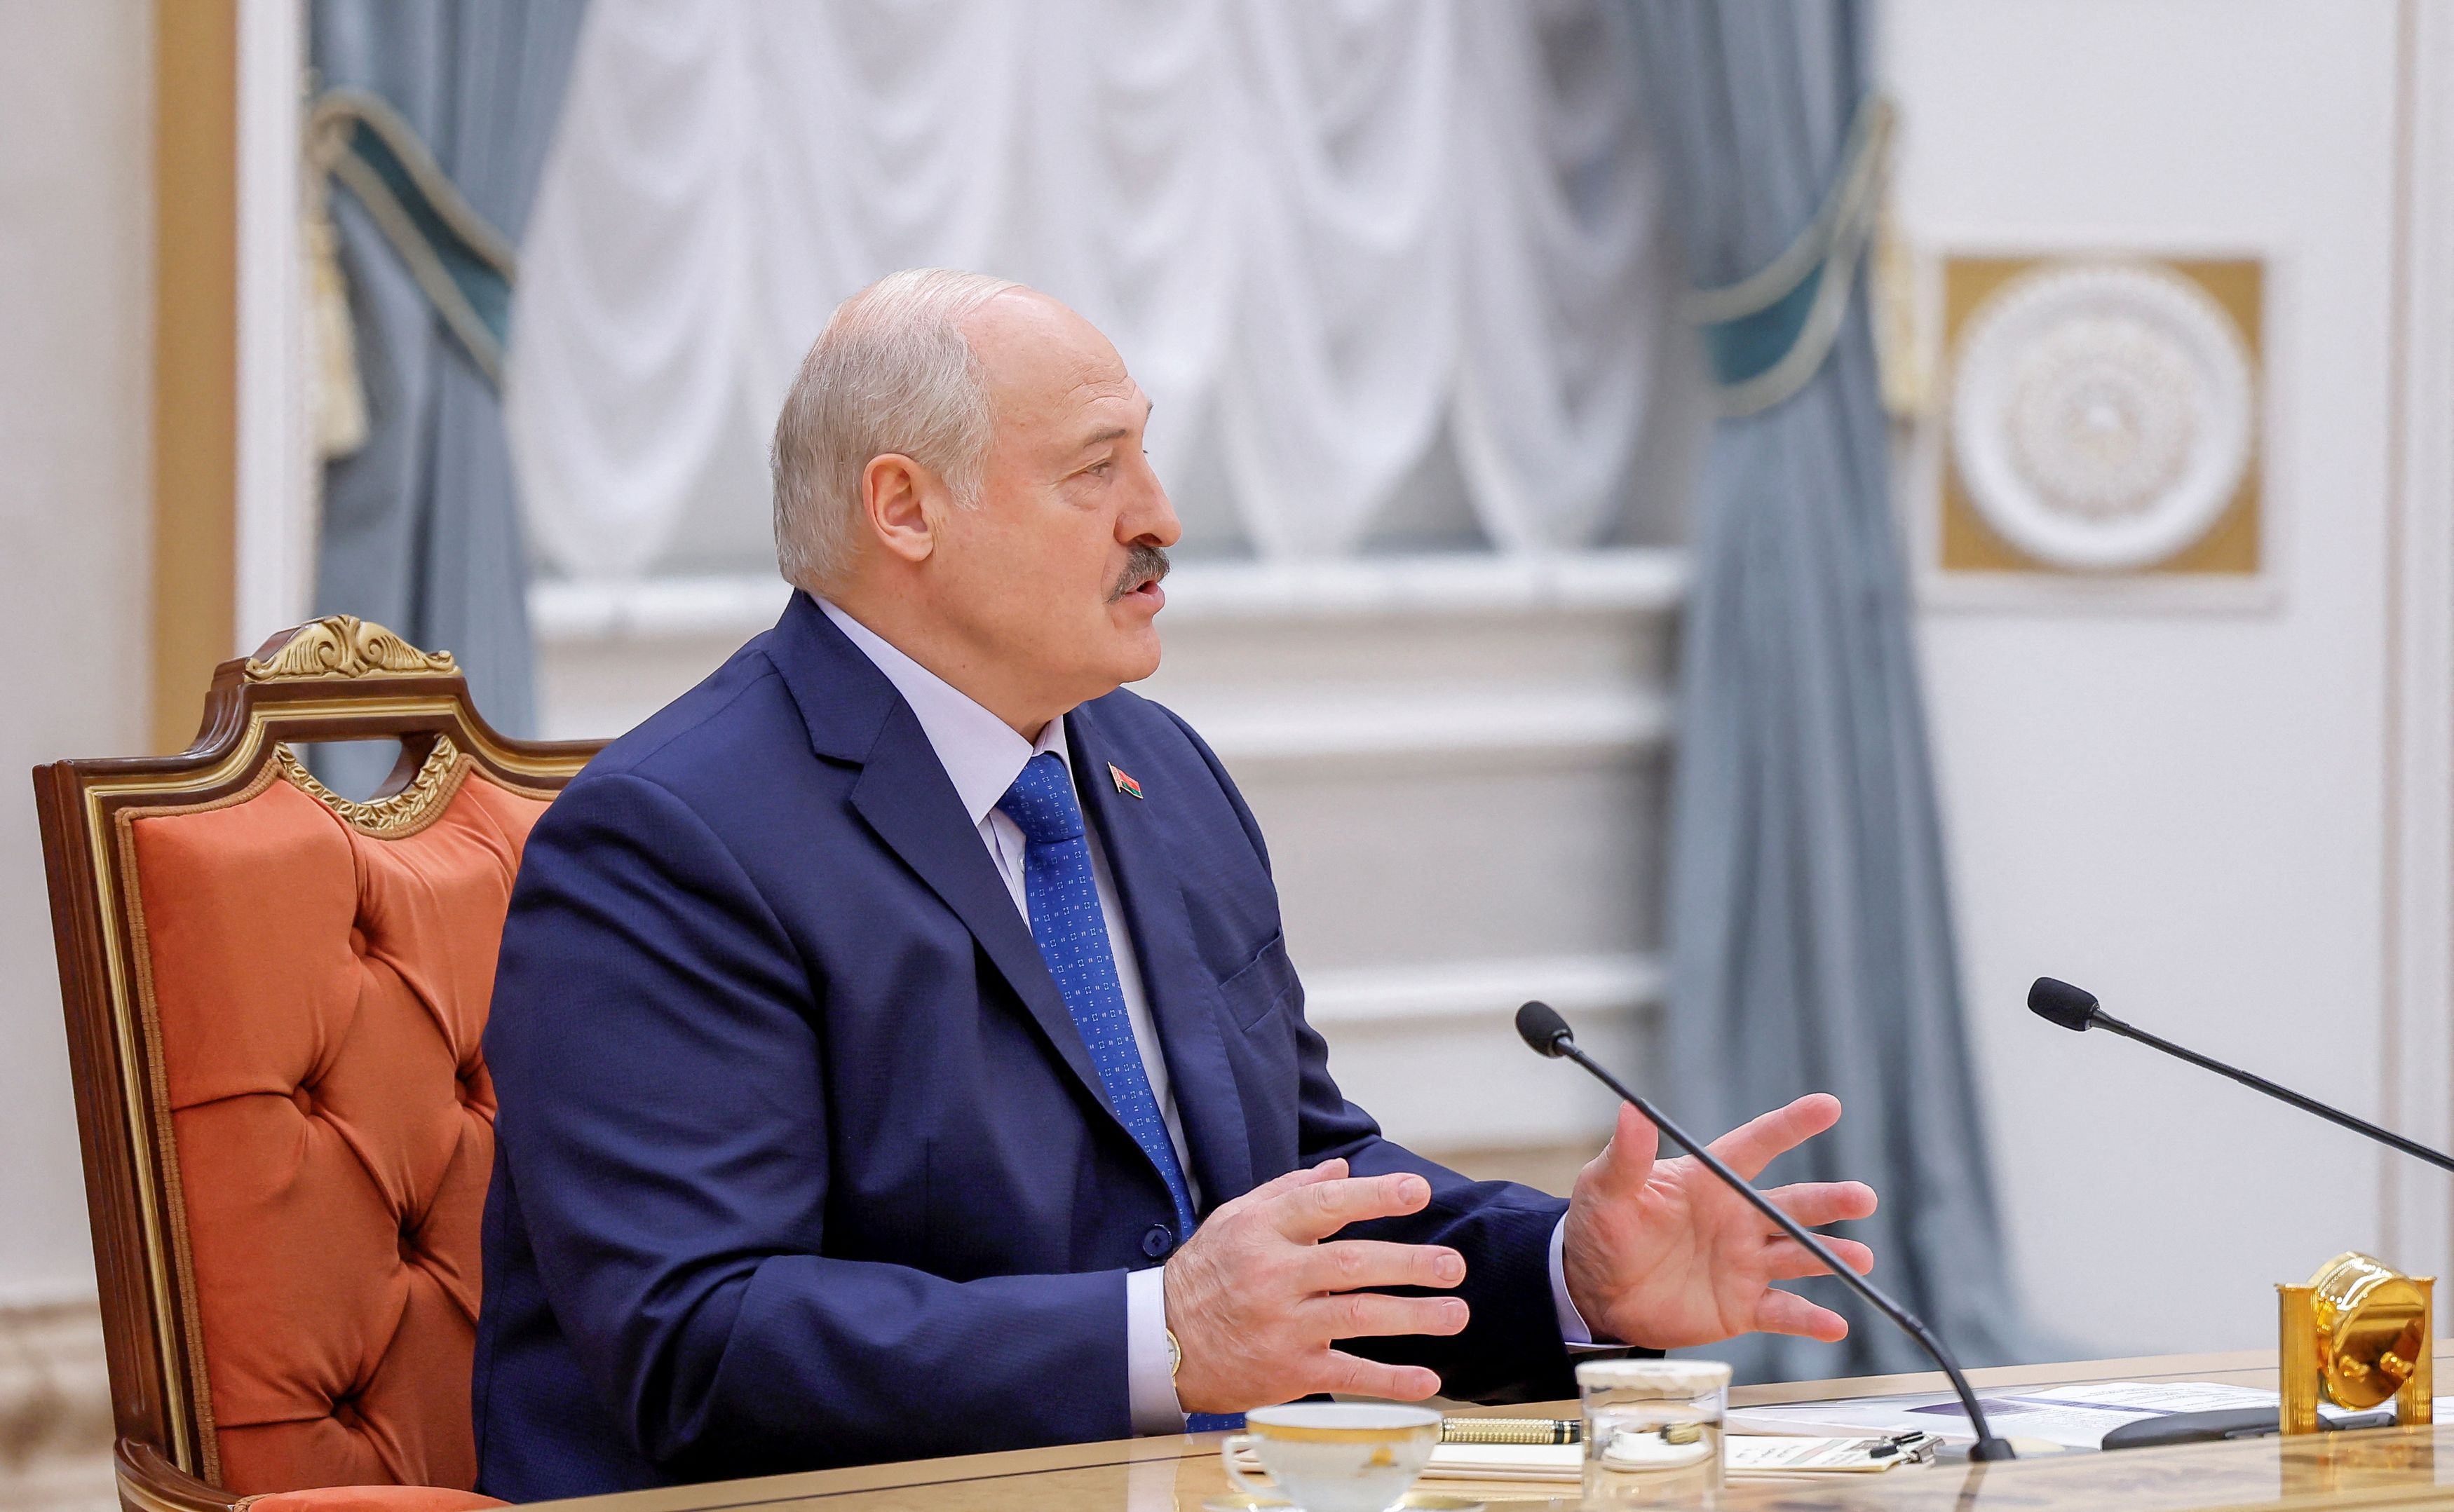 Αλεξάντερ Λουκασένκο: «Δεν είμαι ο τελευταίος δικτάτορας στην Ευρώπη», δηλώνει ο πρόεδρος της Λευκορωσίας